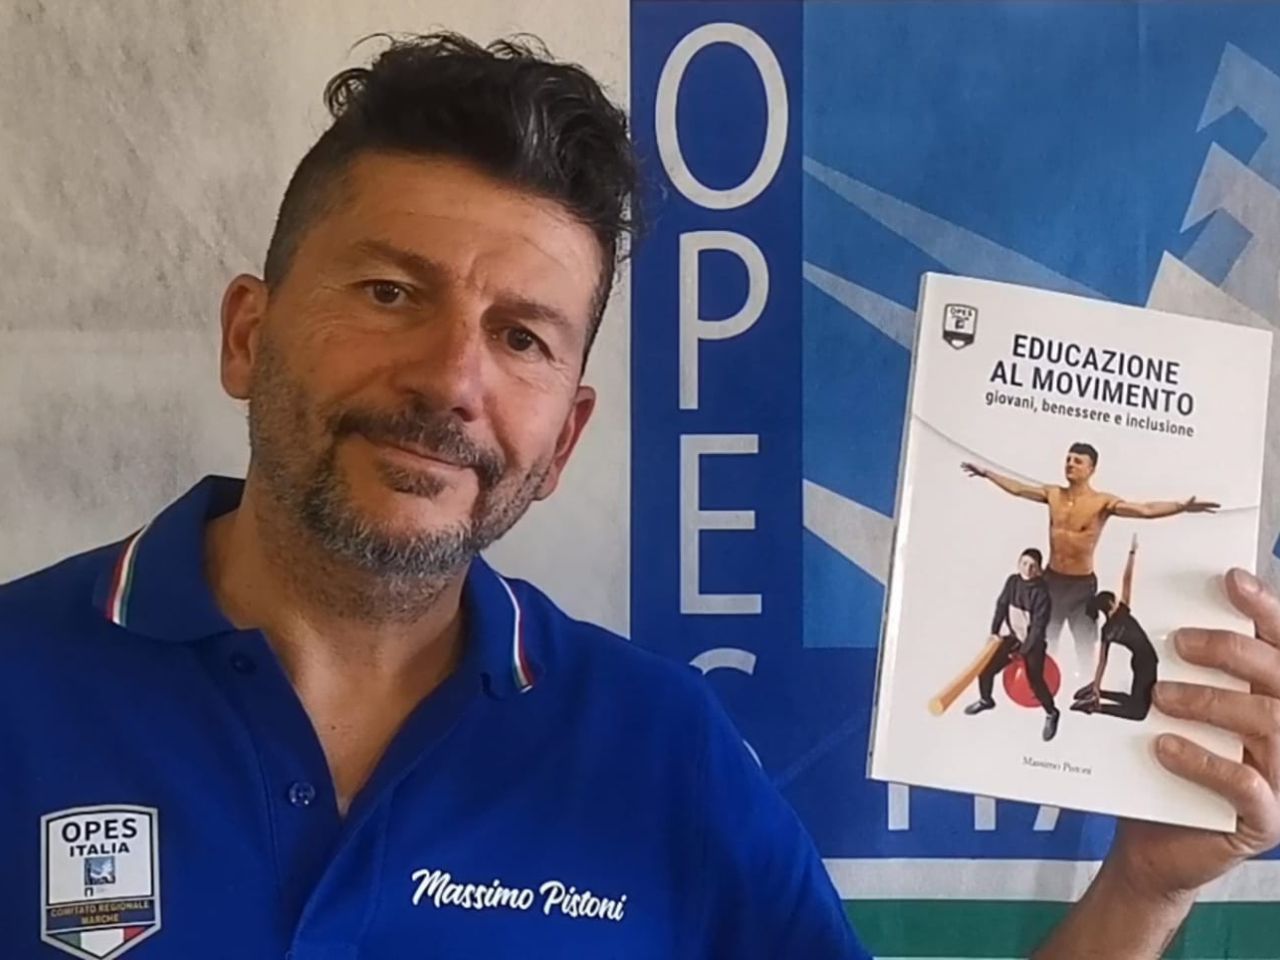 Educazione al movimento: il nuovo libro di Massimo Pistoni